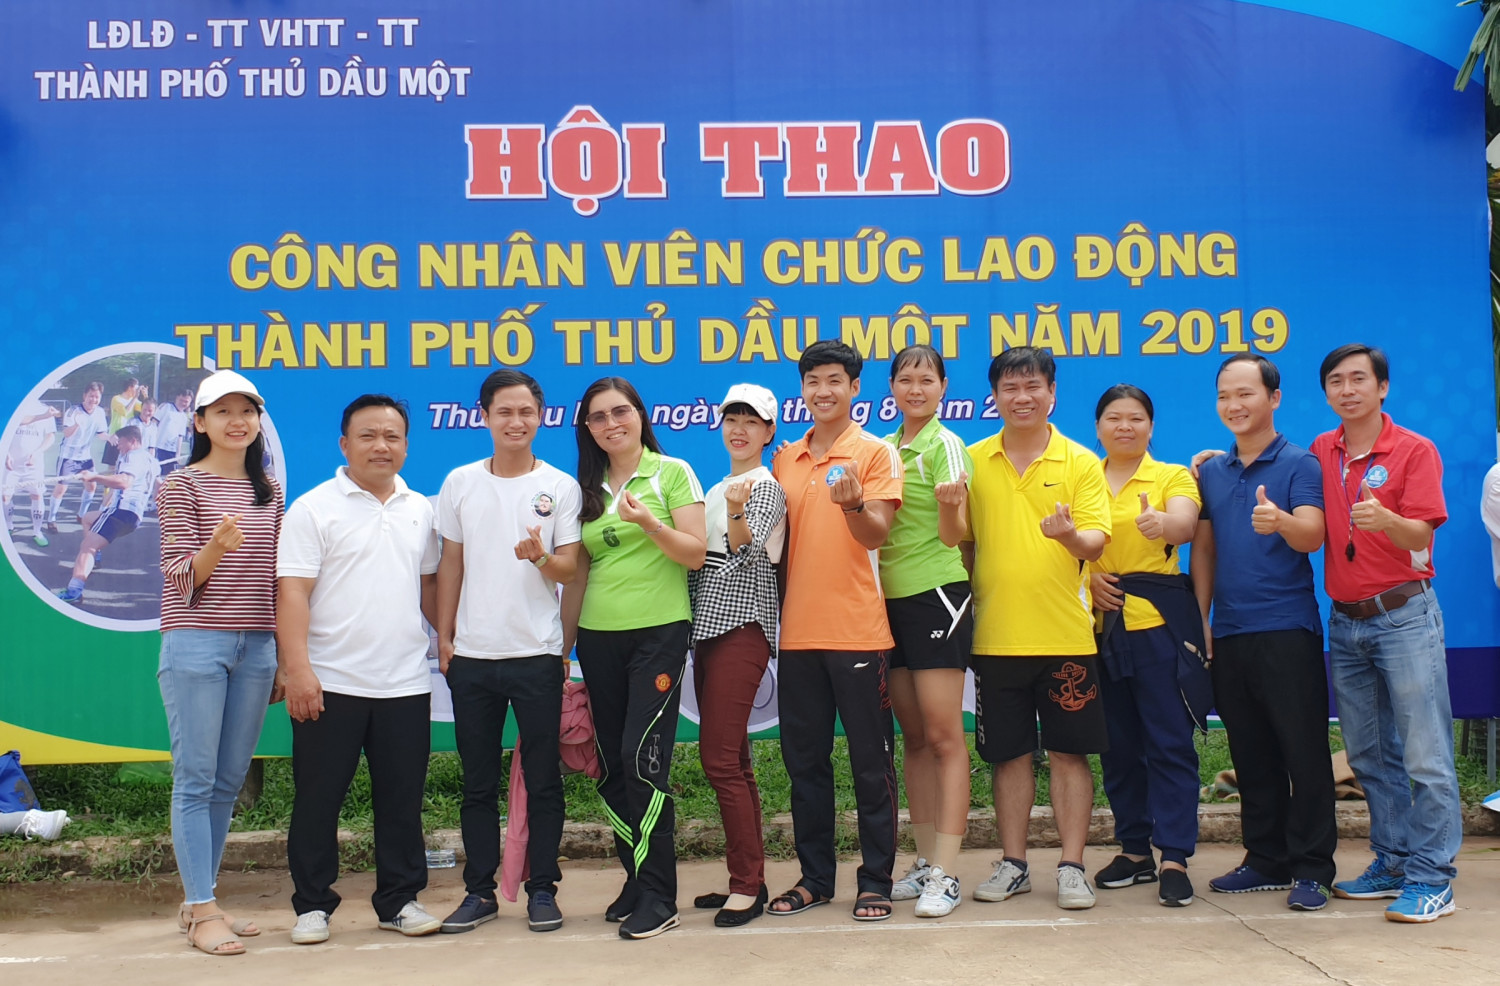 Hoạt động kỷ niệm 90 năm ngày thành lập Công đoàn Việt Nam